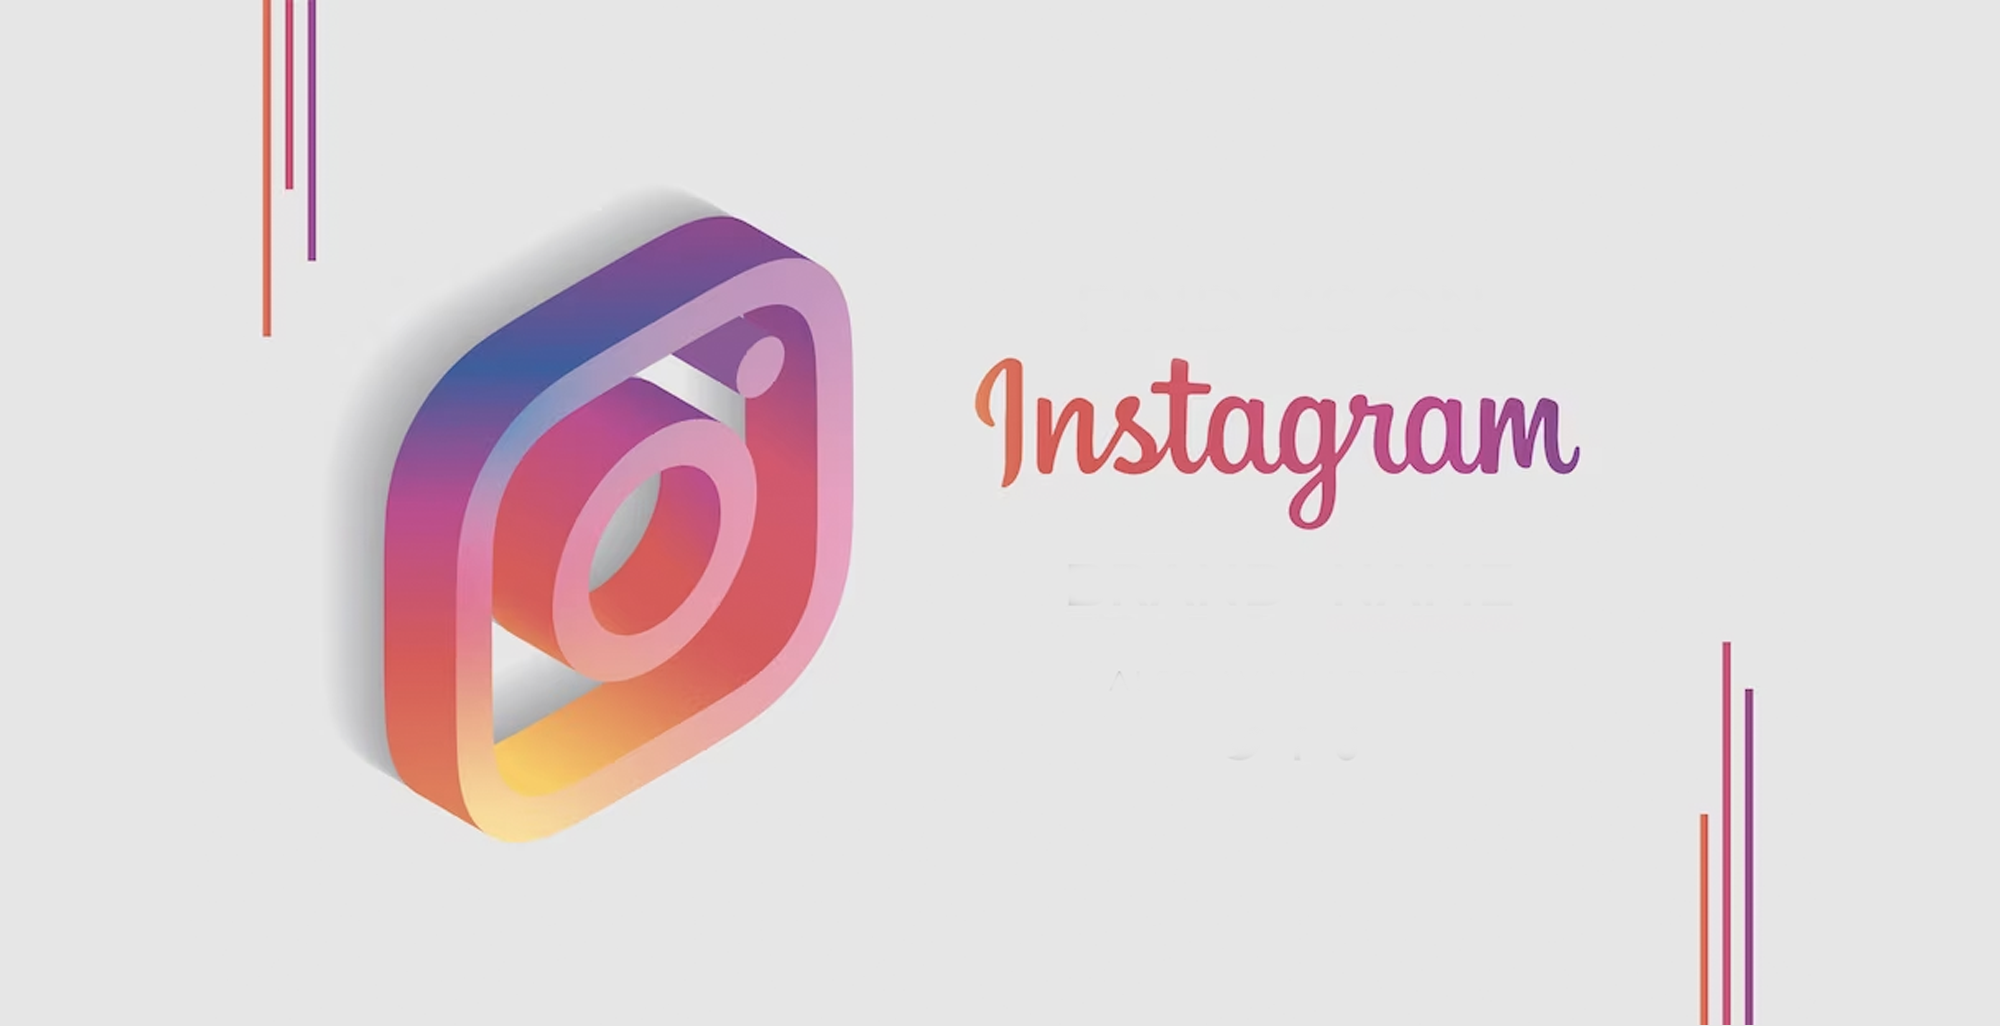 Utiliser Instagram de manière professionnelle : 6 conseils